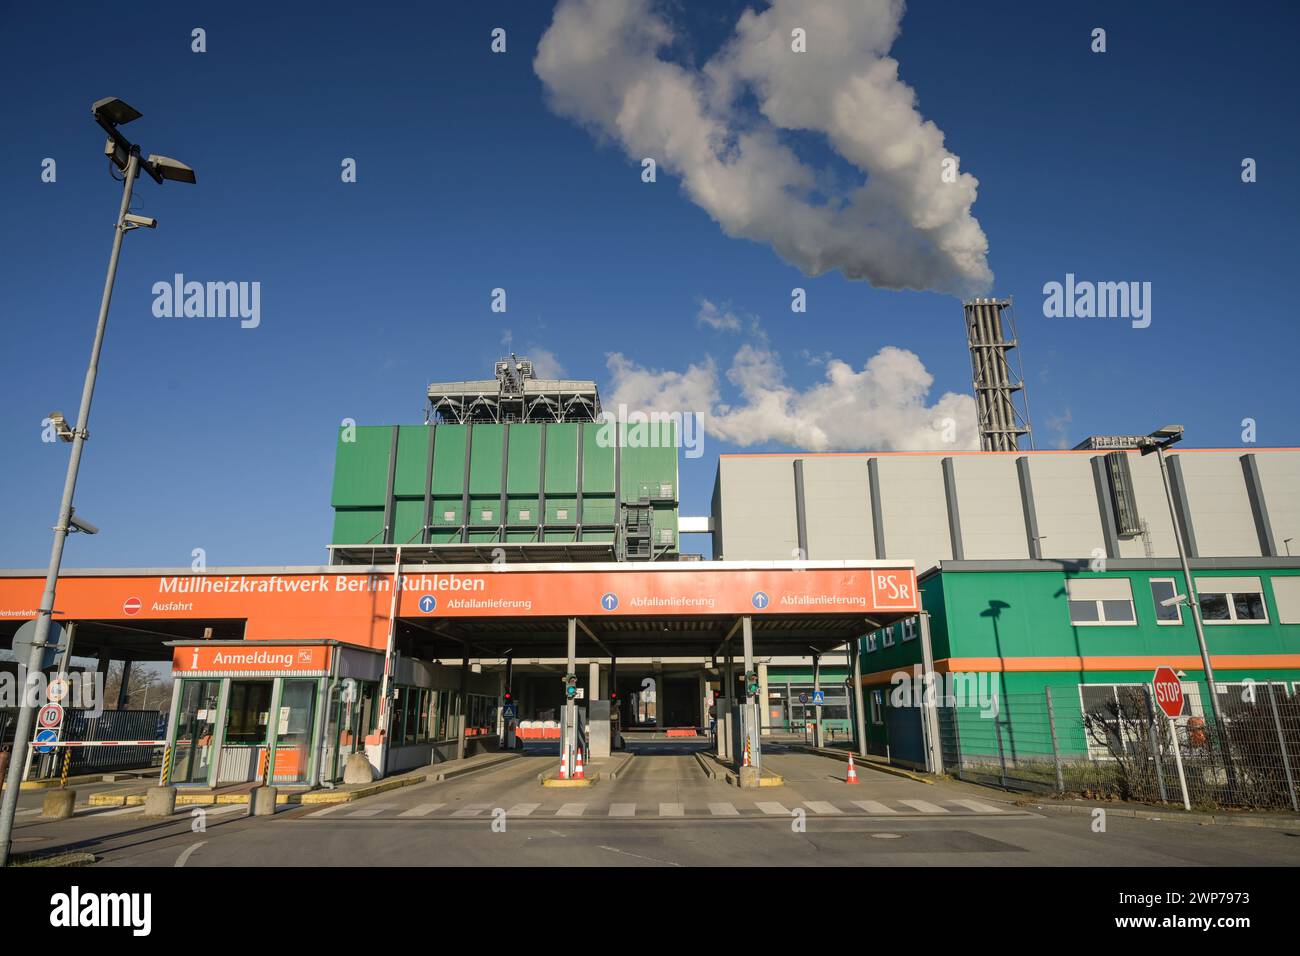 Müllheizkraftwerk der BSR, Freiheit, Ruhleben, Spandau, Berlin, Deutschland Stockfoto